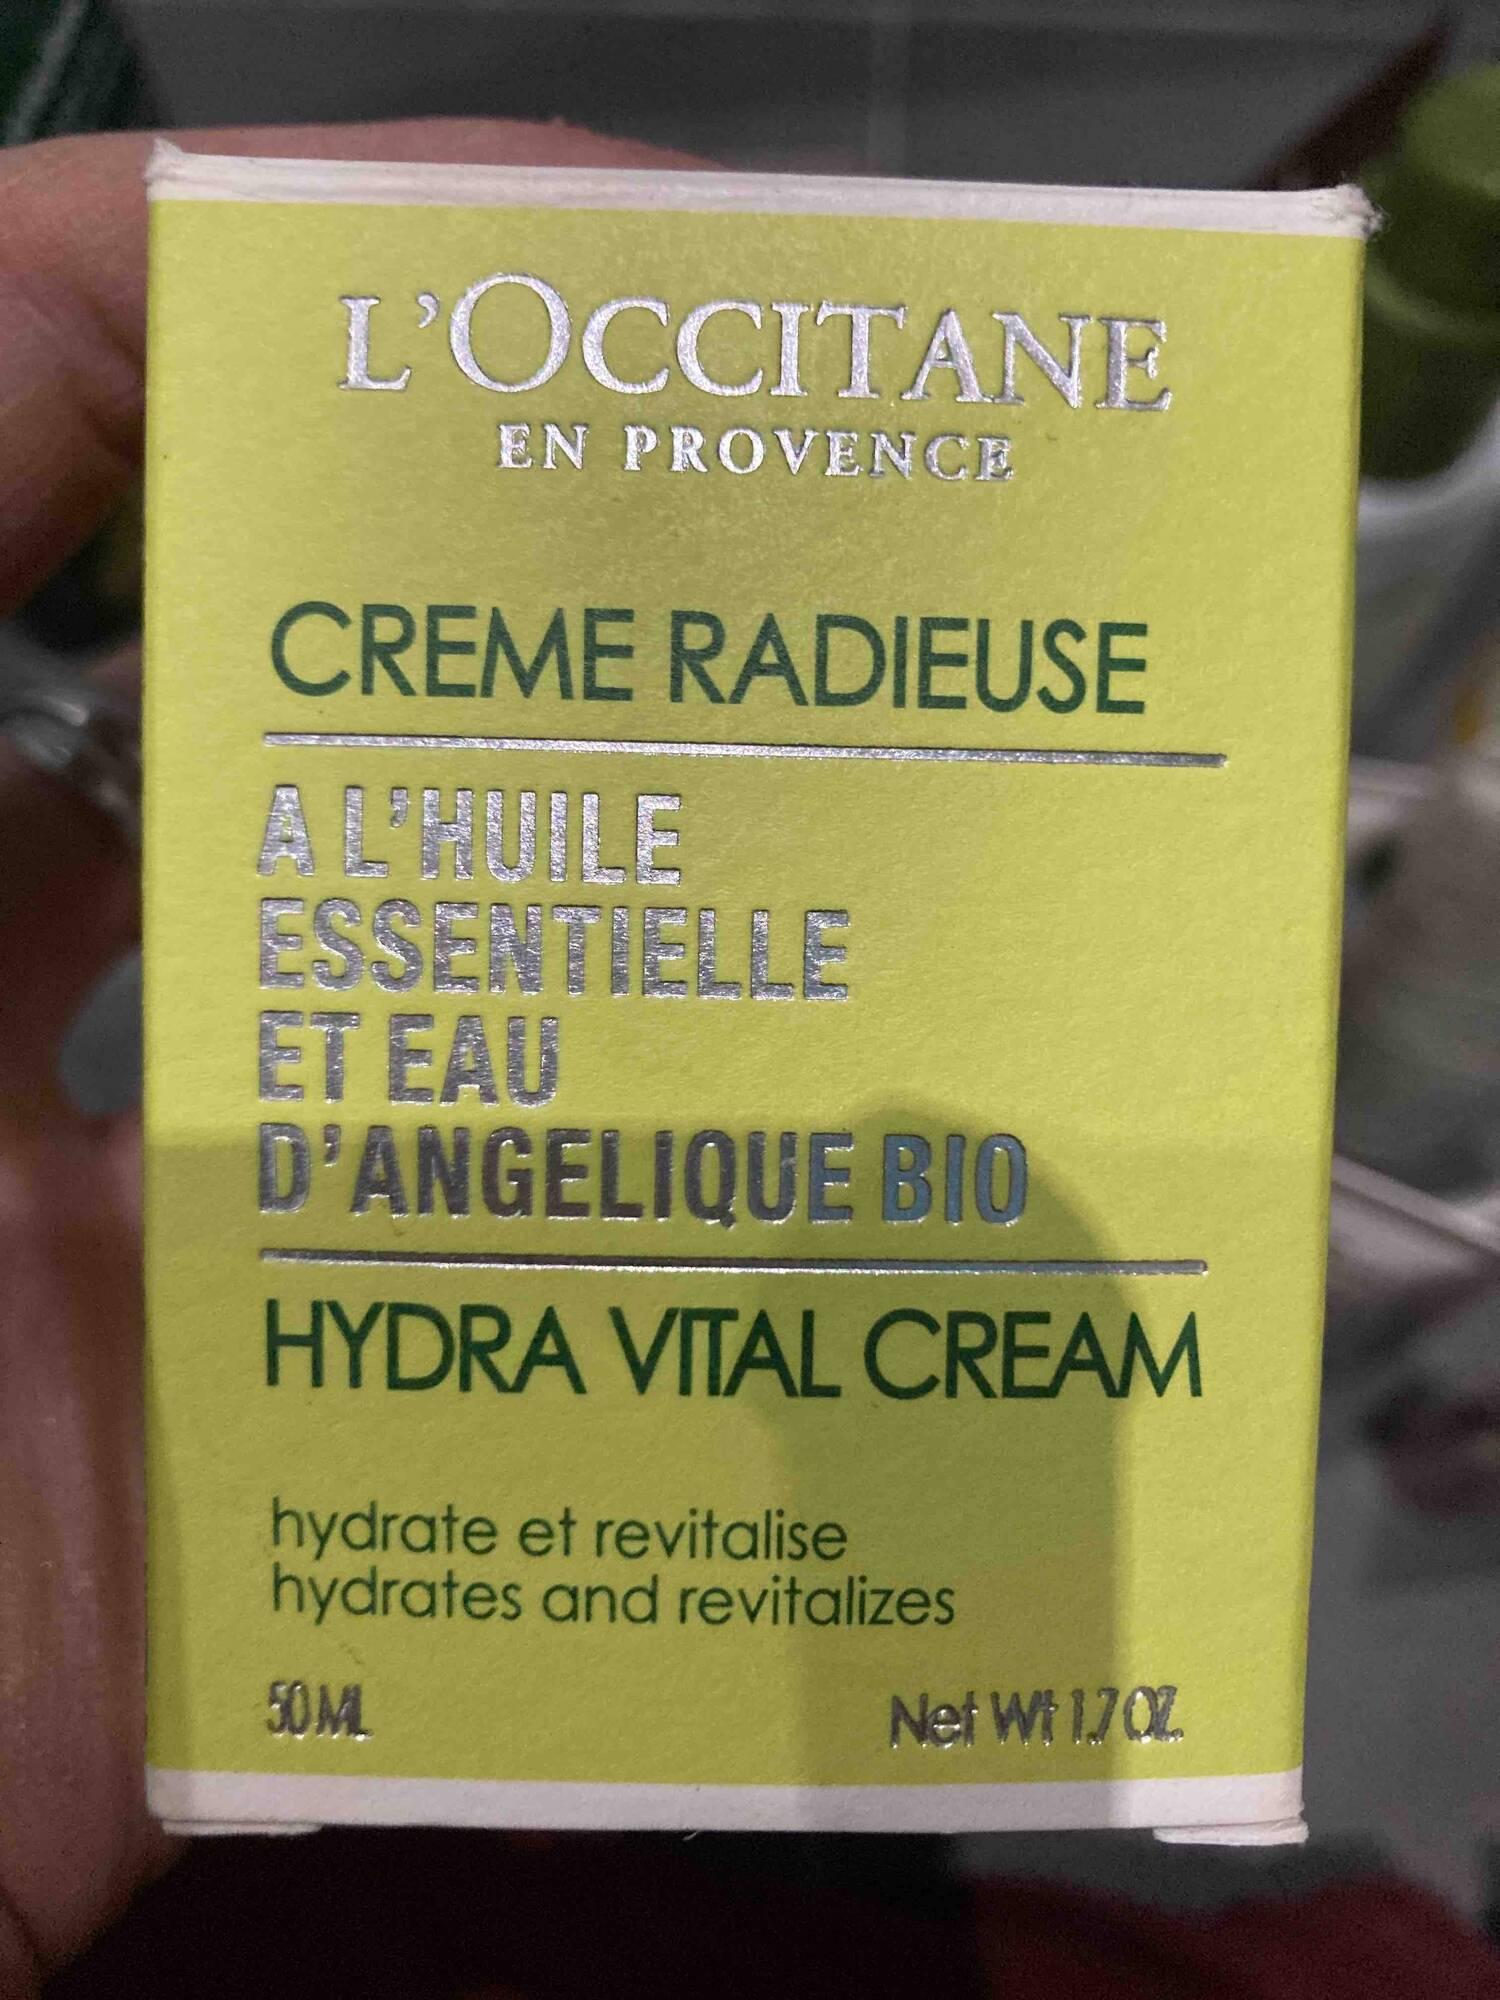 L'OCCITANE - Crème radieuse à l'huile essentielle et eau d'angélique